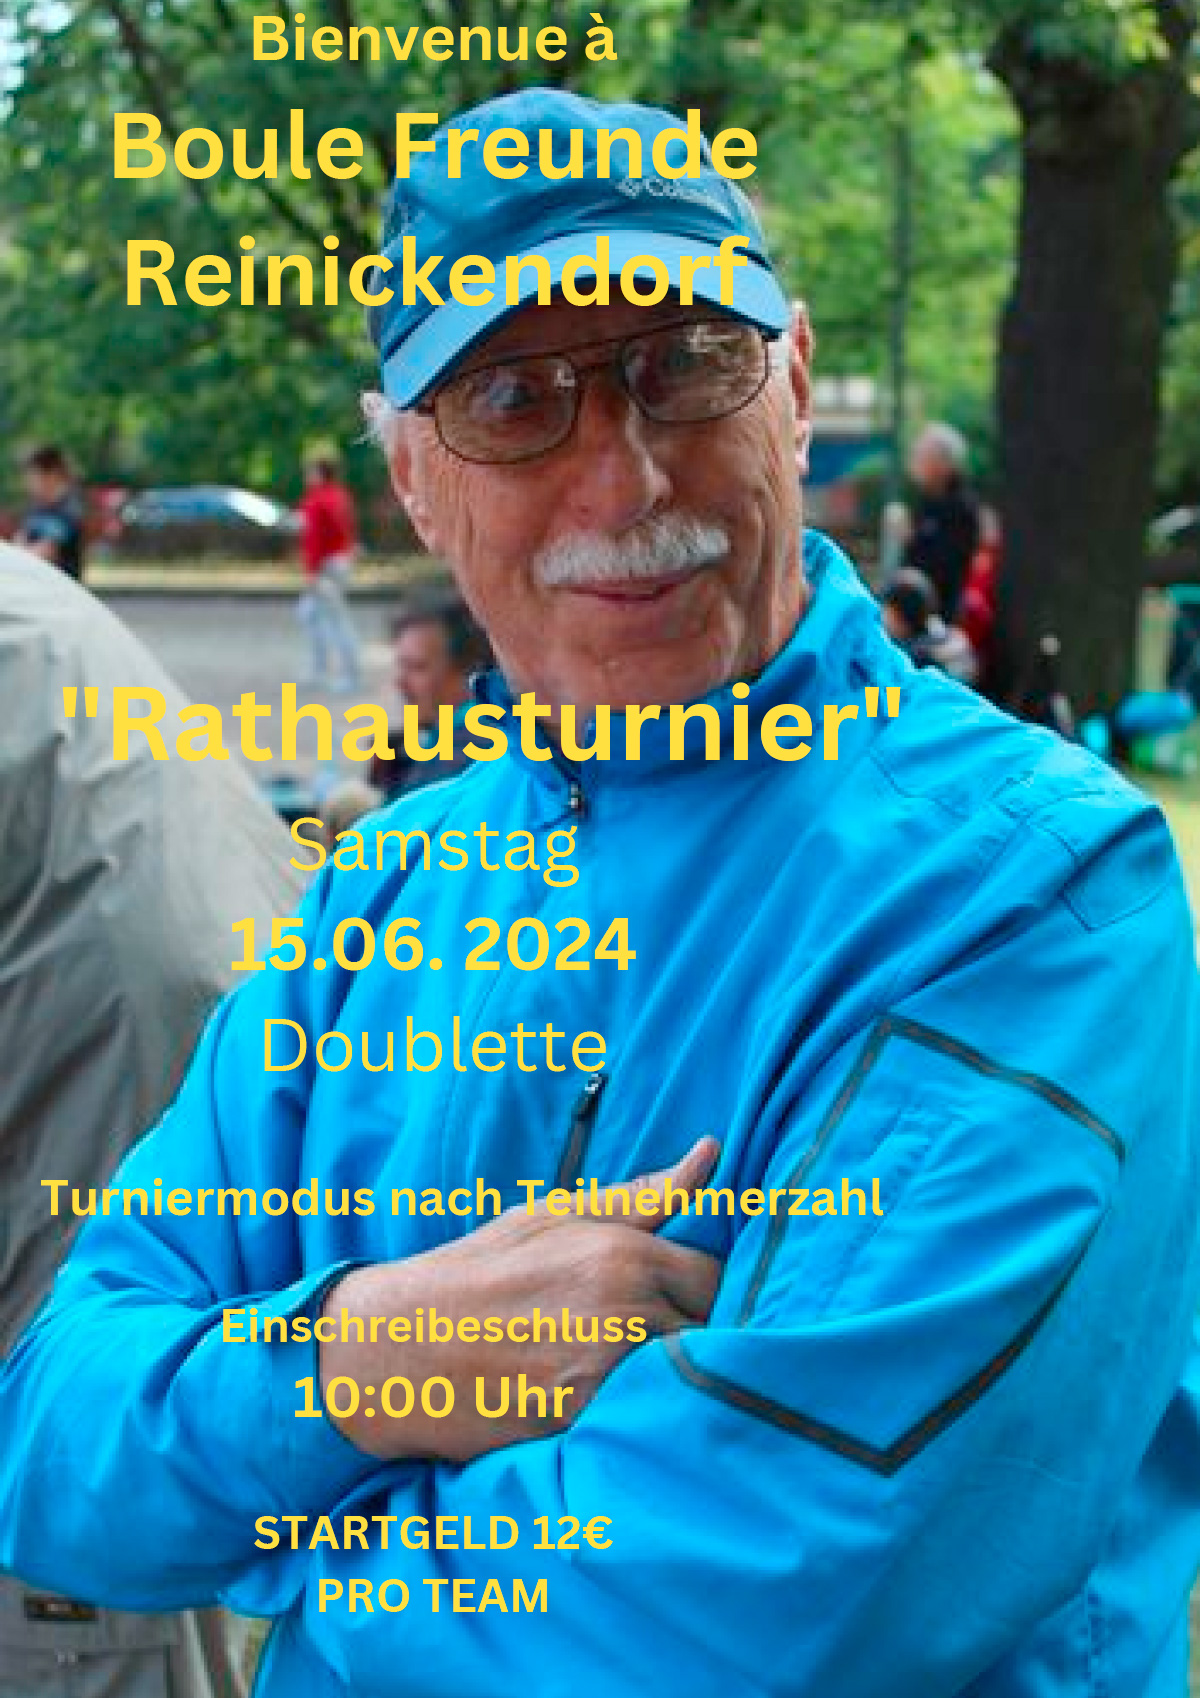 Rathaustunier Reinickendorf